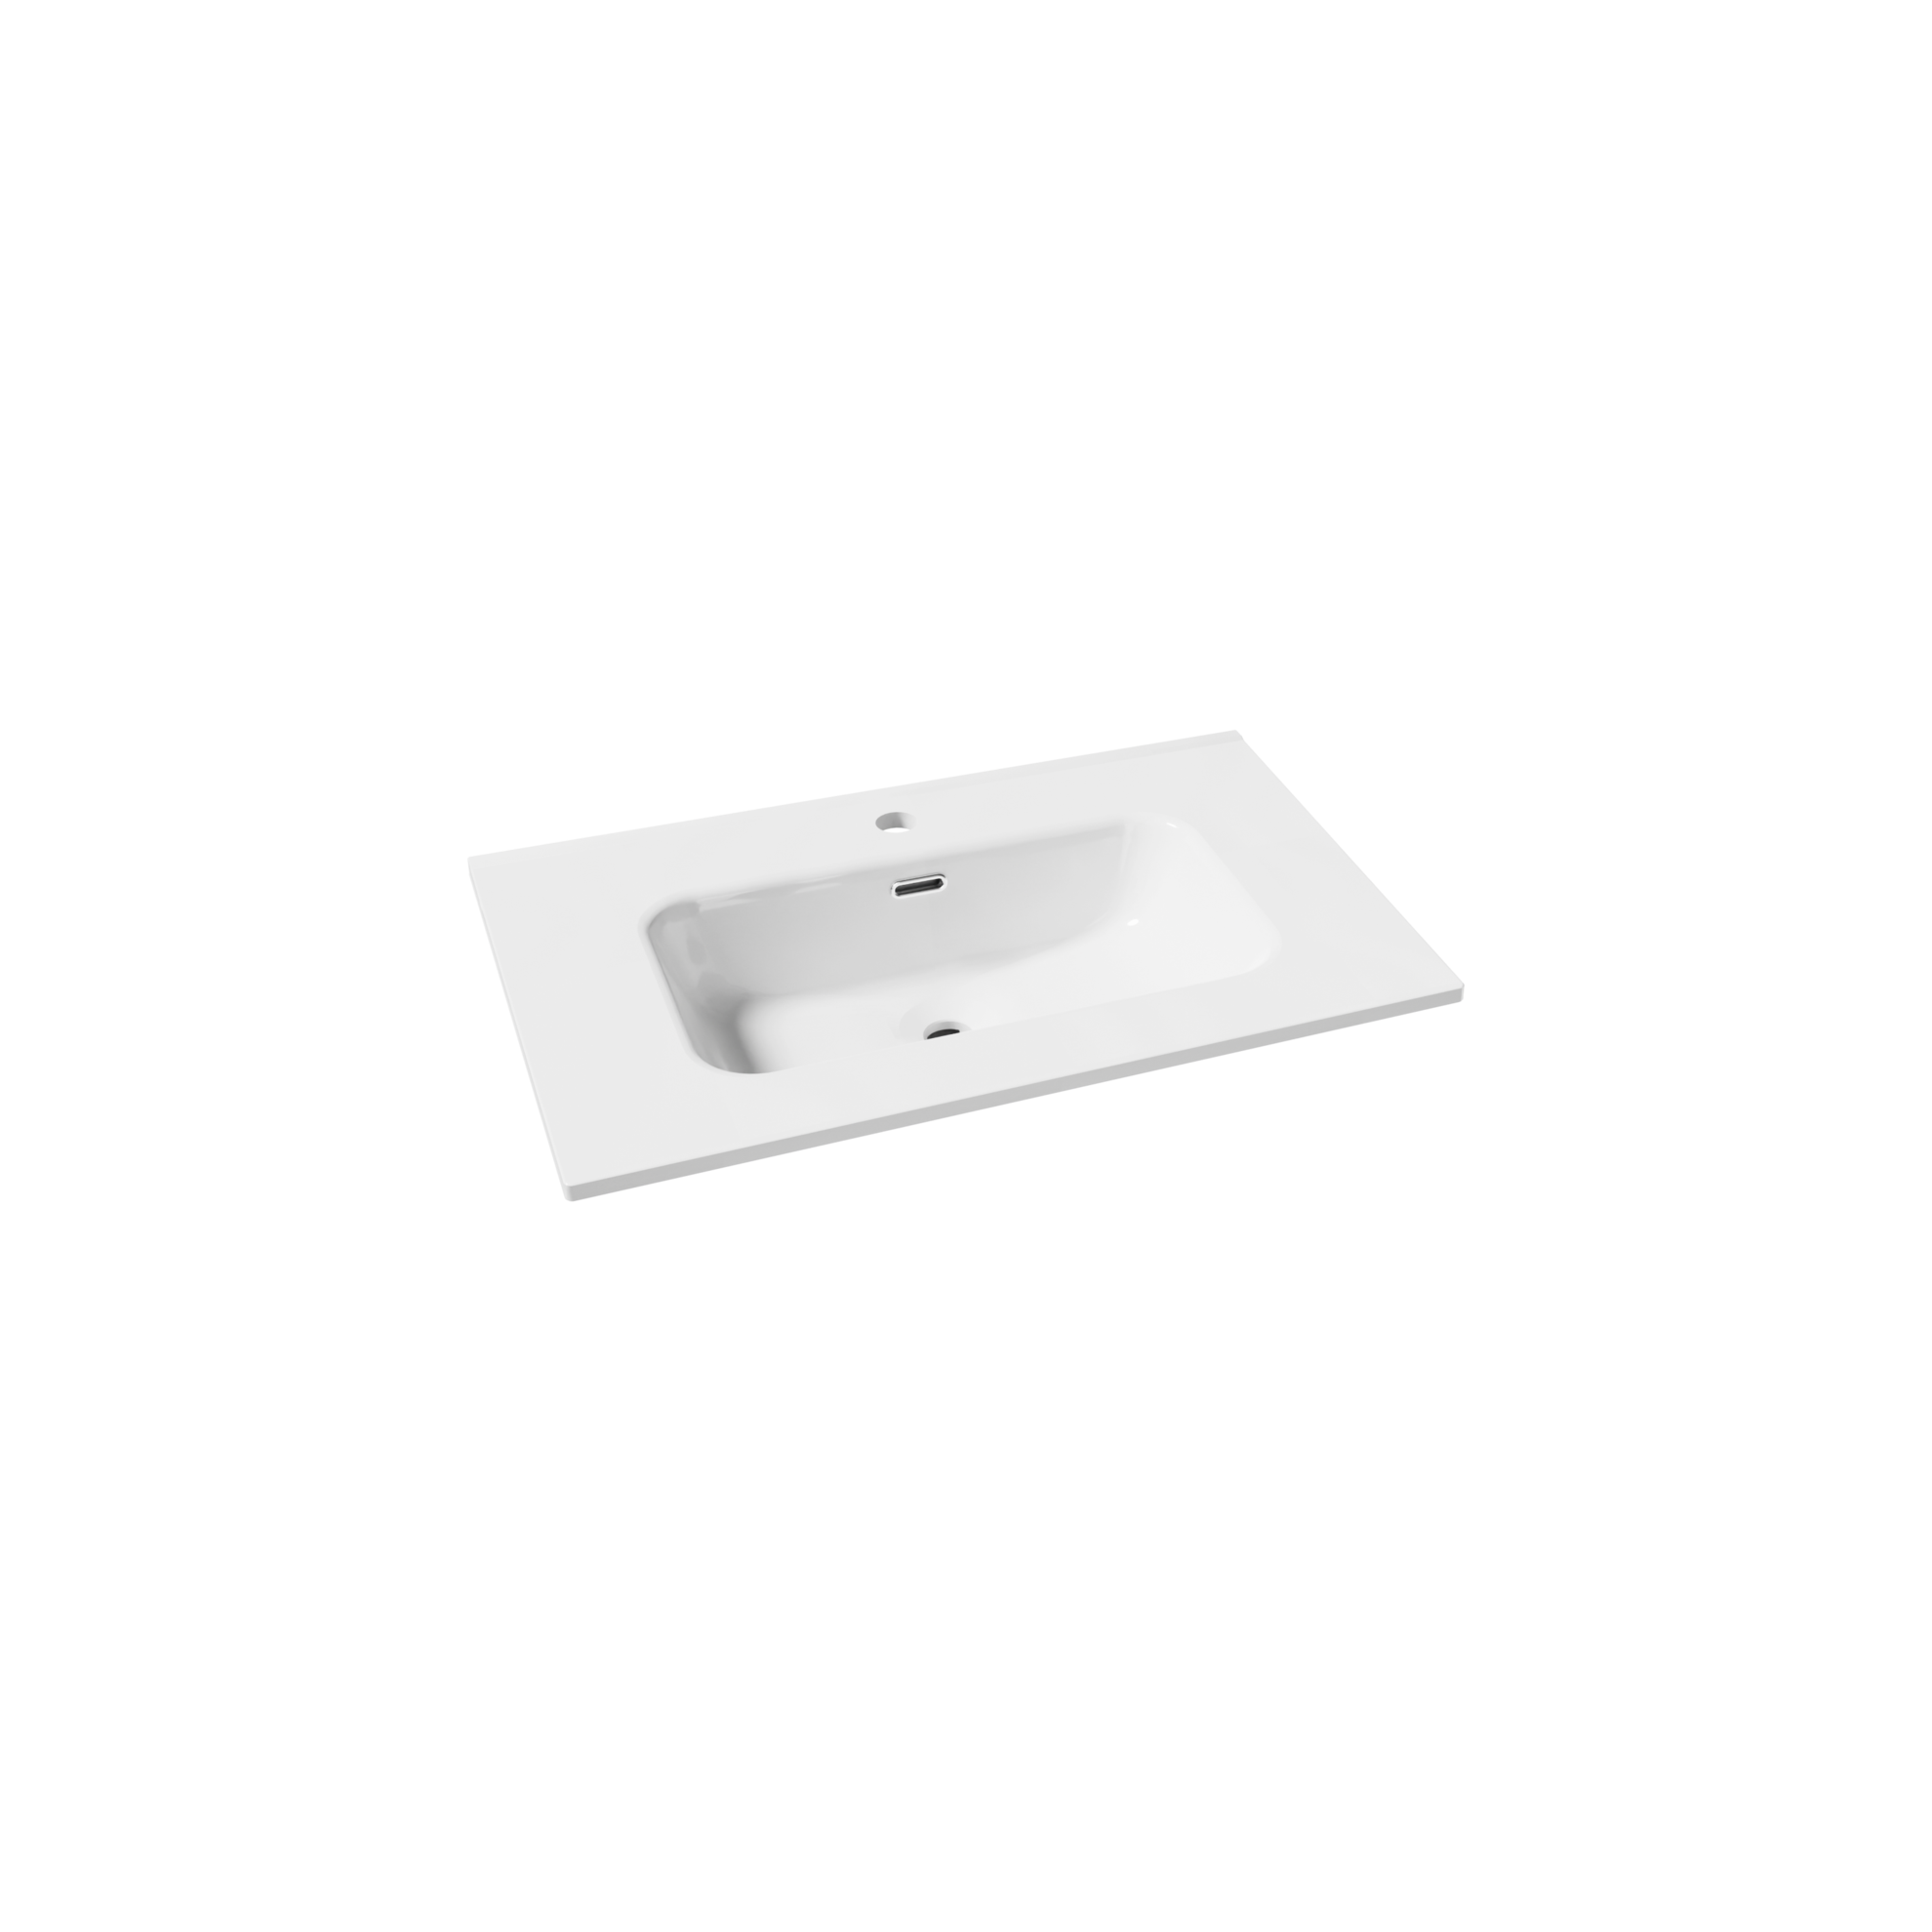 Linie Baro plan simple Porcelaine blanc brillant 70 x 46 cm offre à 109€ sur X2O